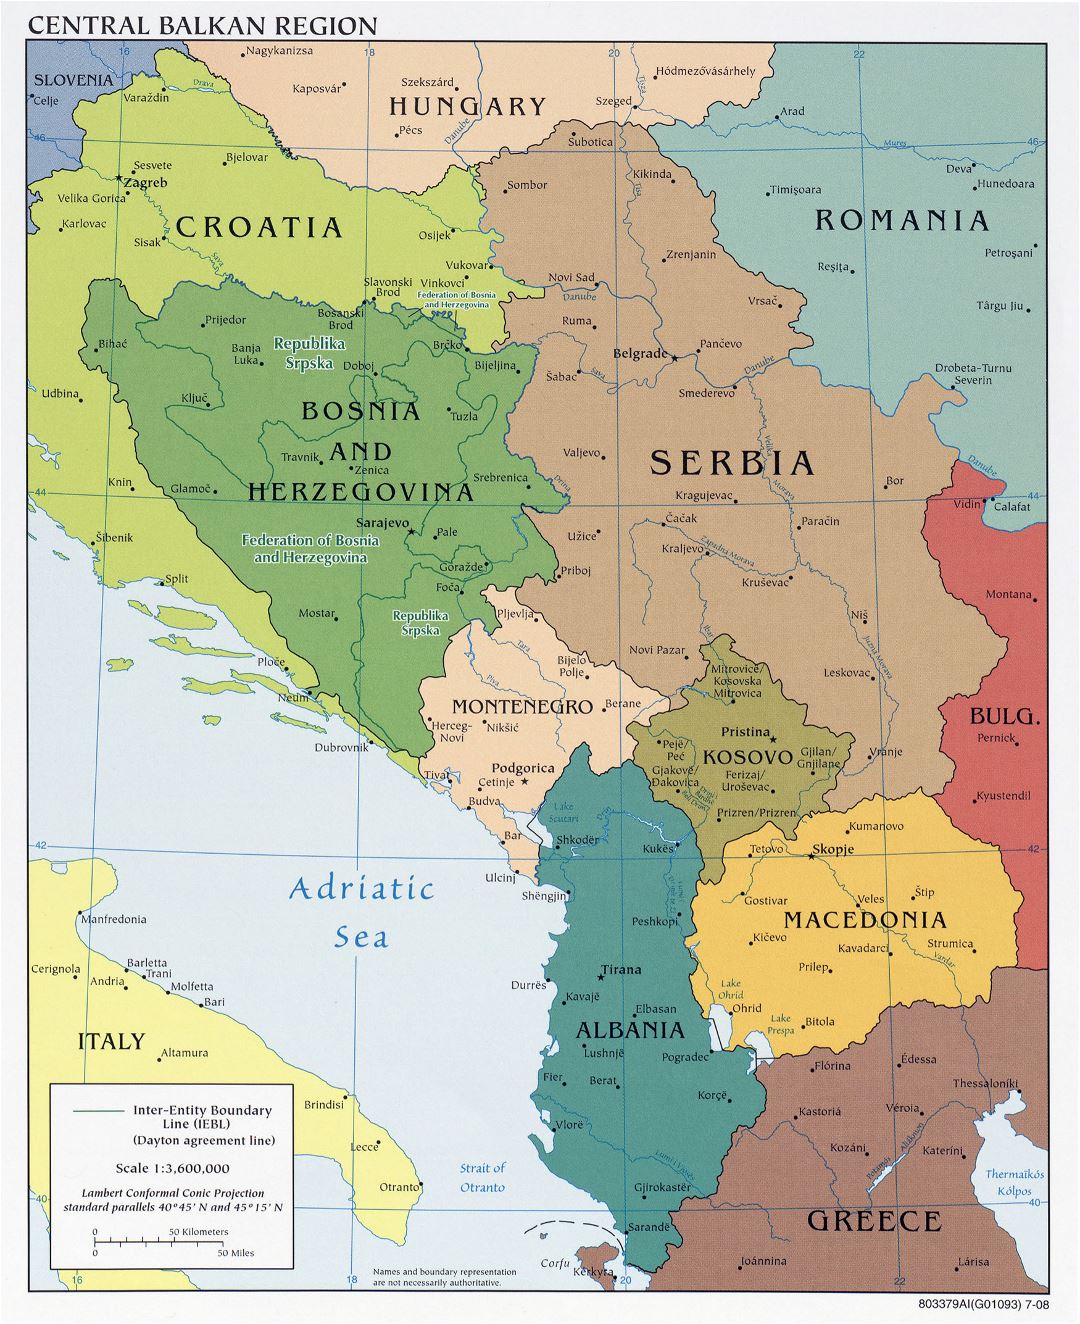 Mapa grande política detallada de la Región Central de los Balcanes con las principales ciudades - 2008